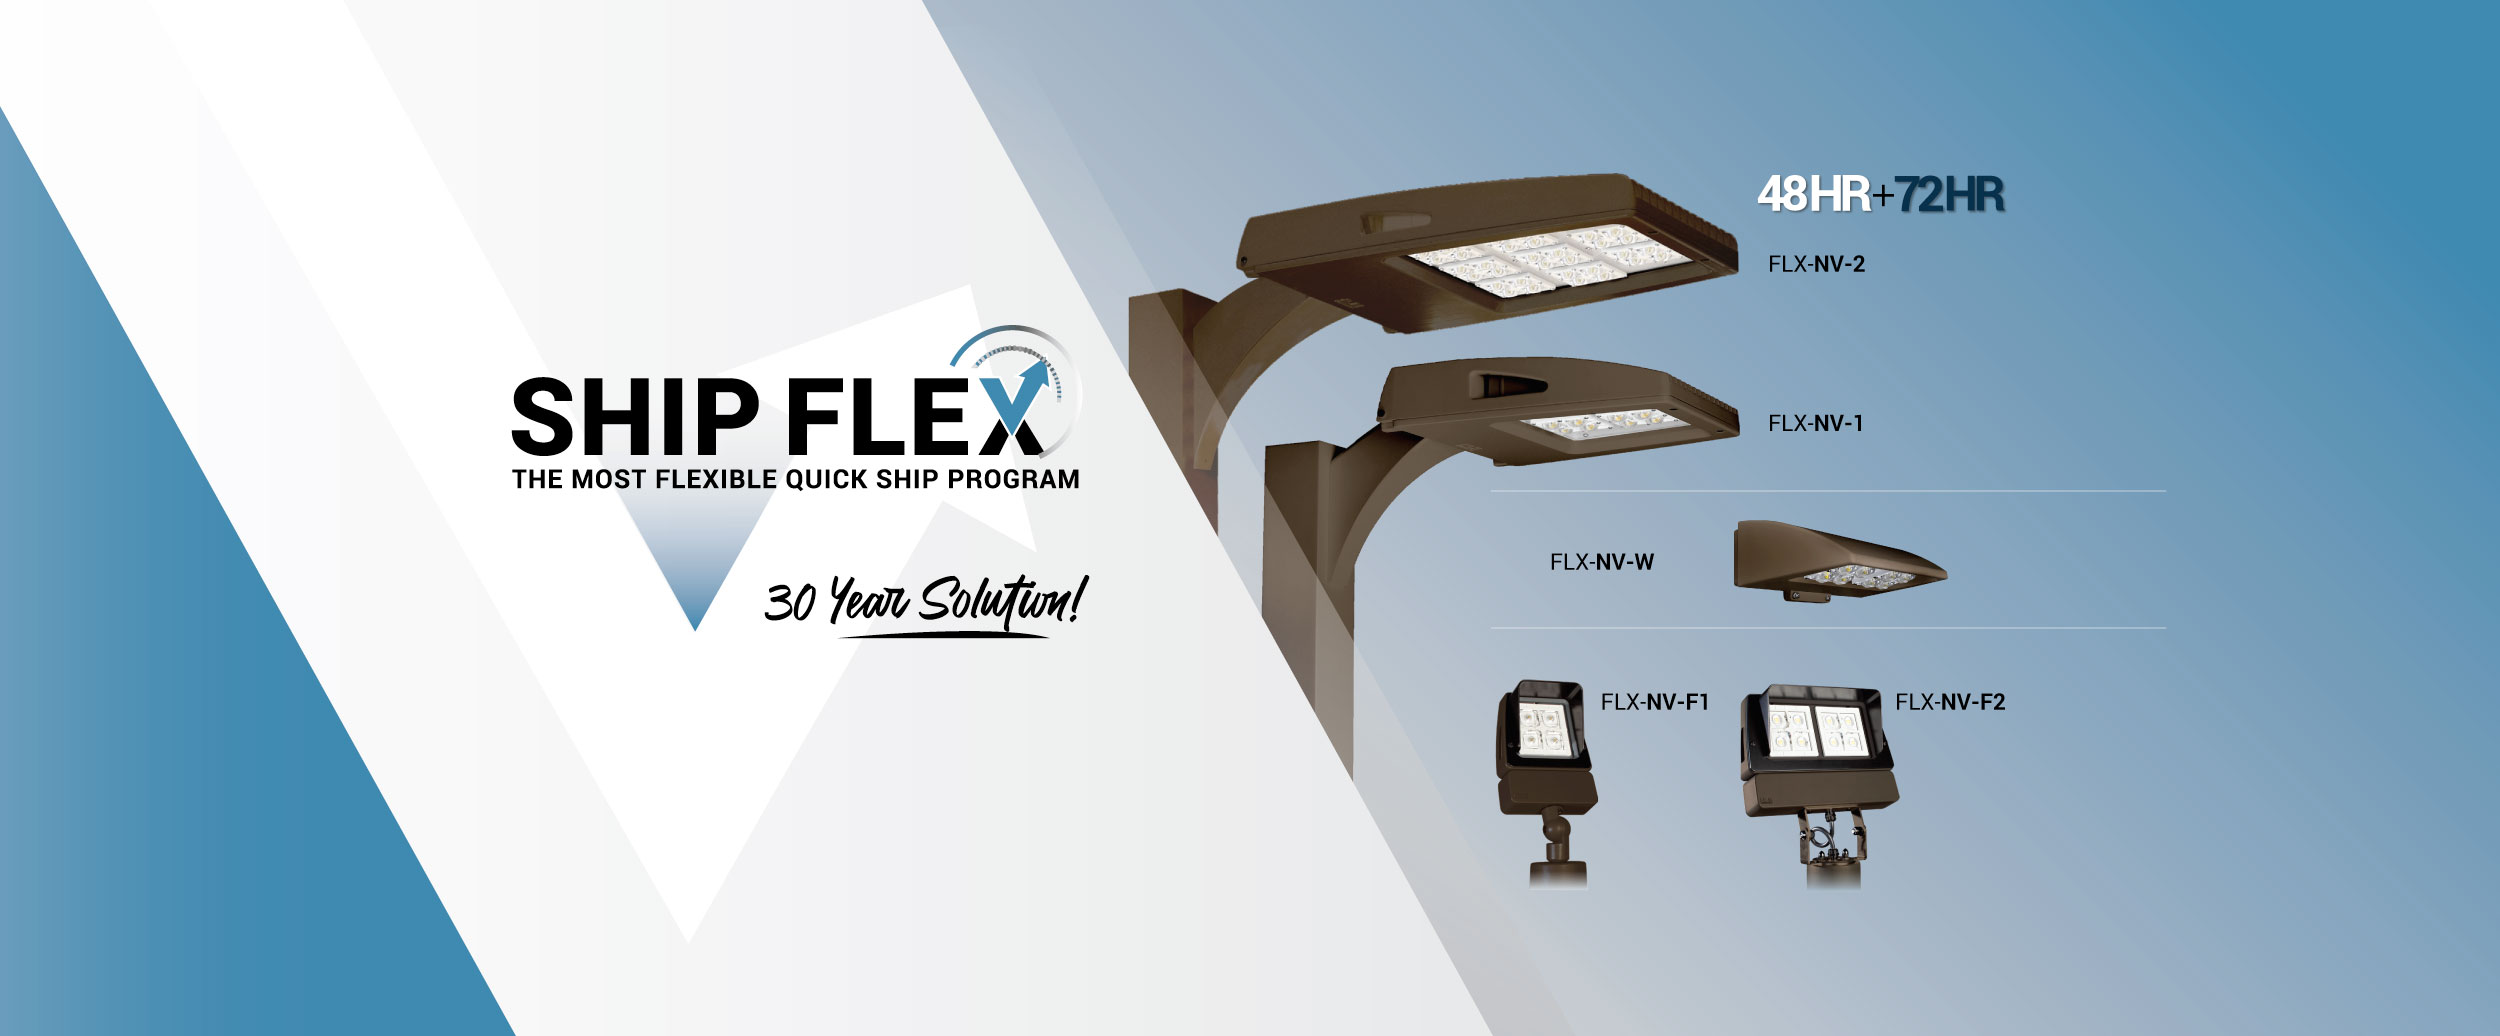 shipflex_HOME_Slider3